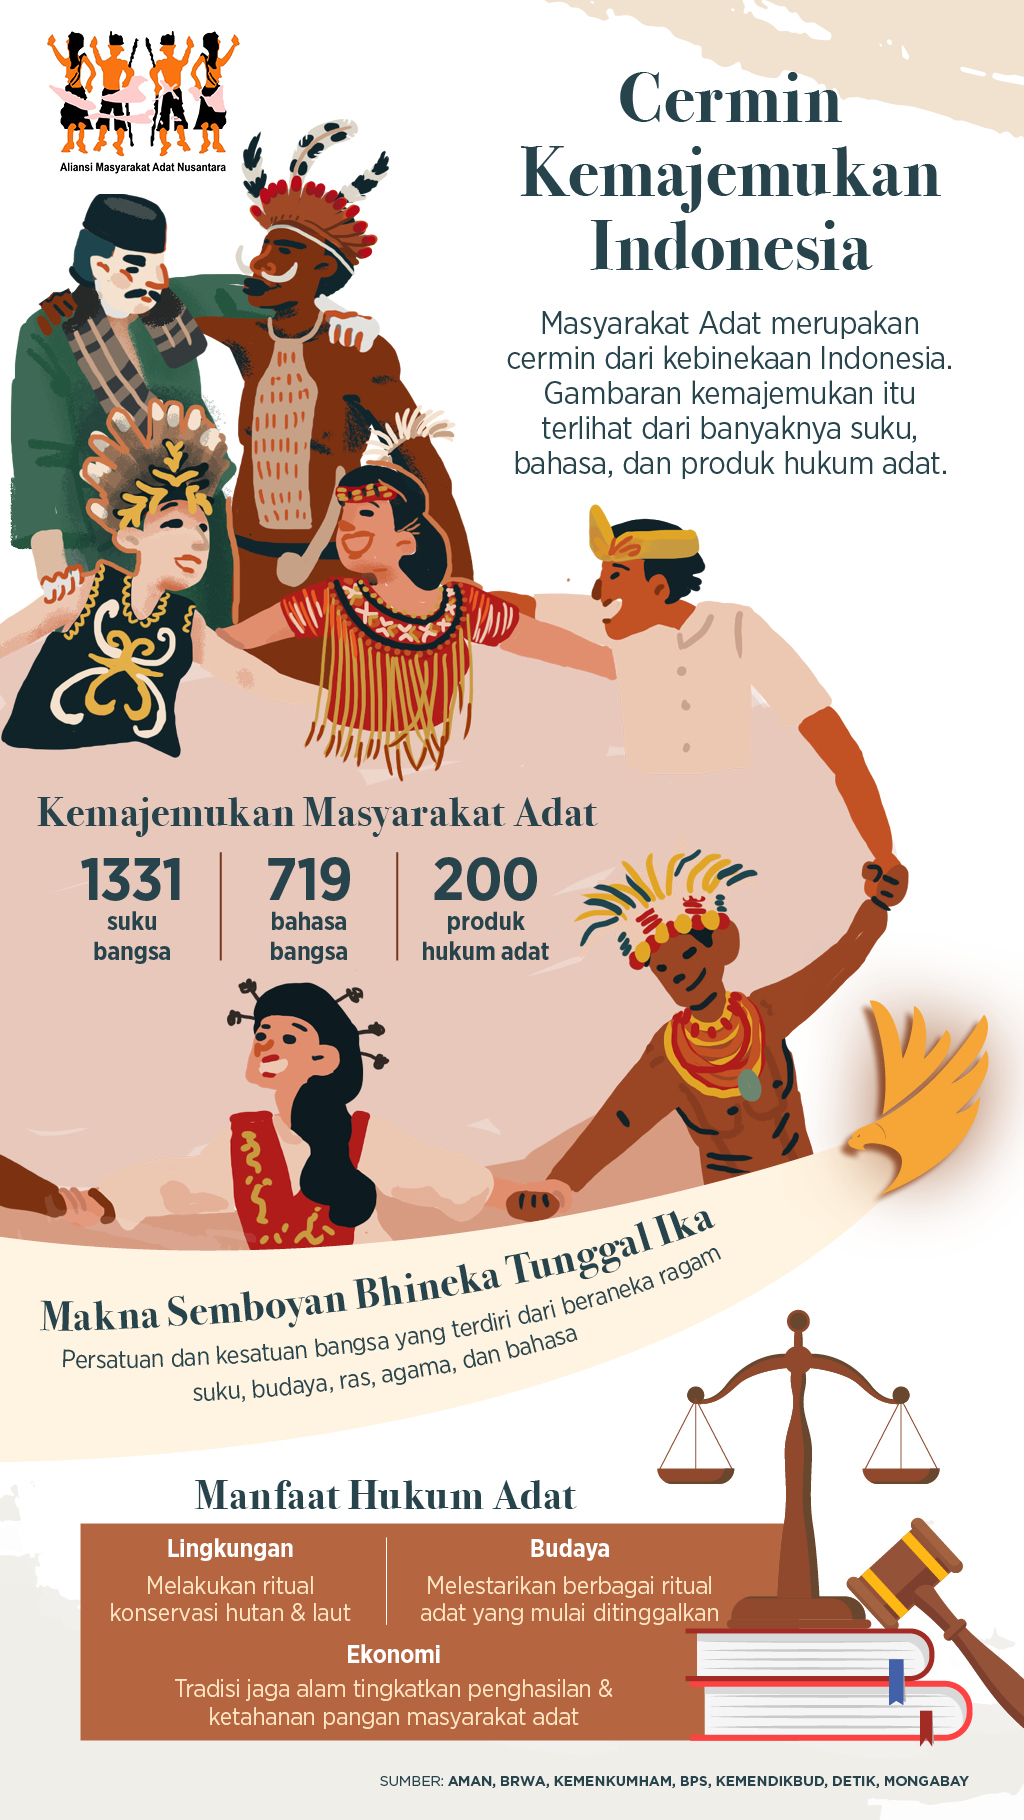 Bangsa keberagaman yaitu dengan sesuai yang ada di indonesia semboyan indonesia Jadikan Perbedaan